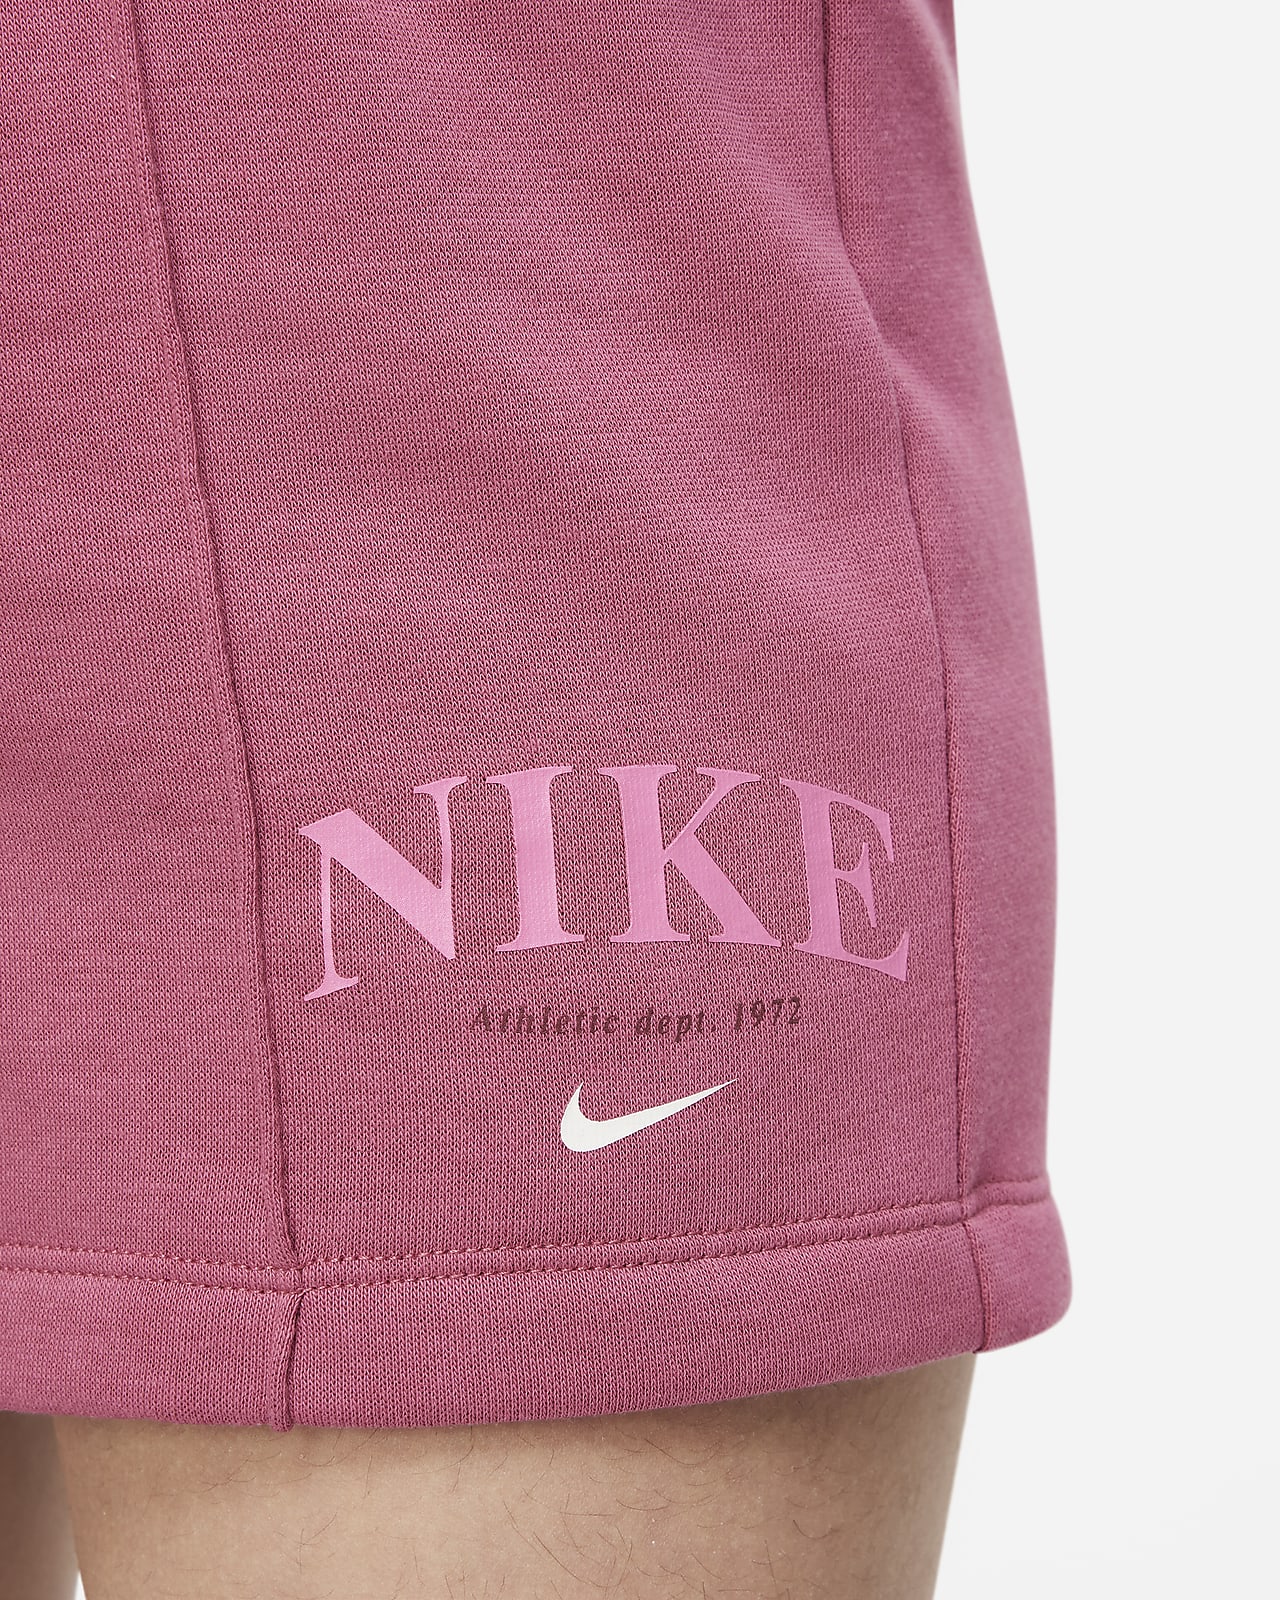 Nike Sportswear Older Kids' (Girls') Shorts. Nike PH